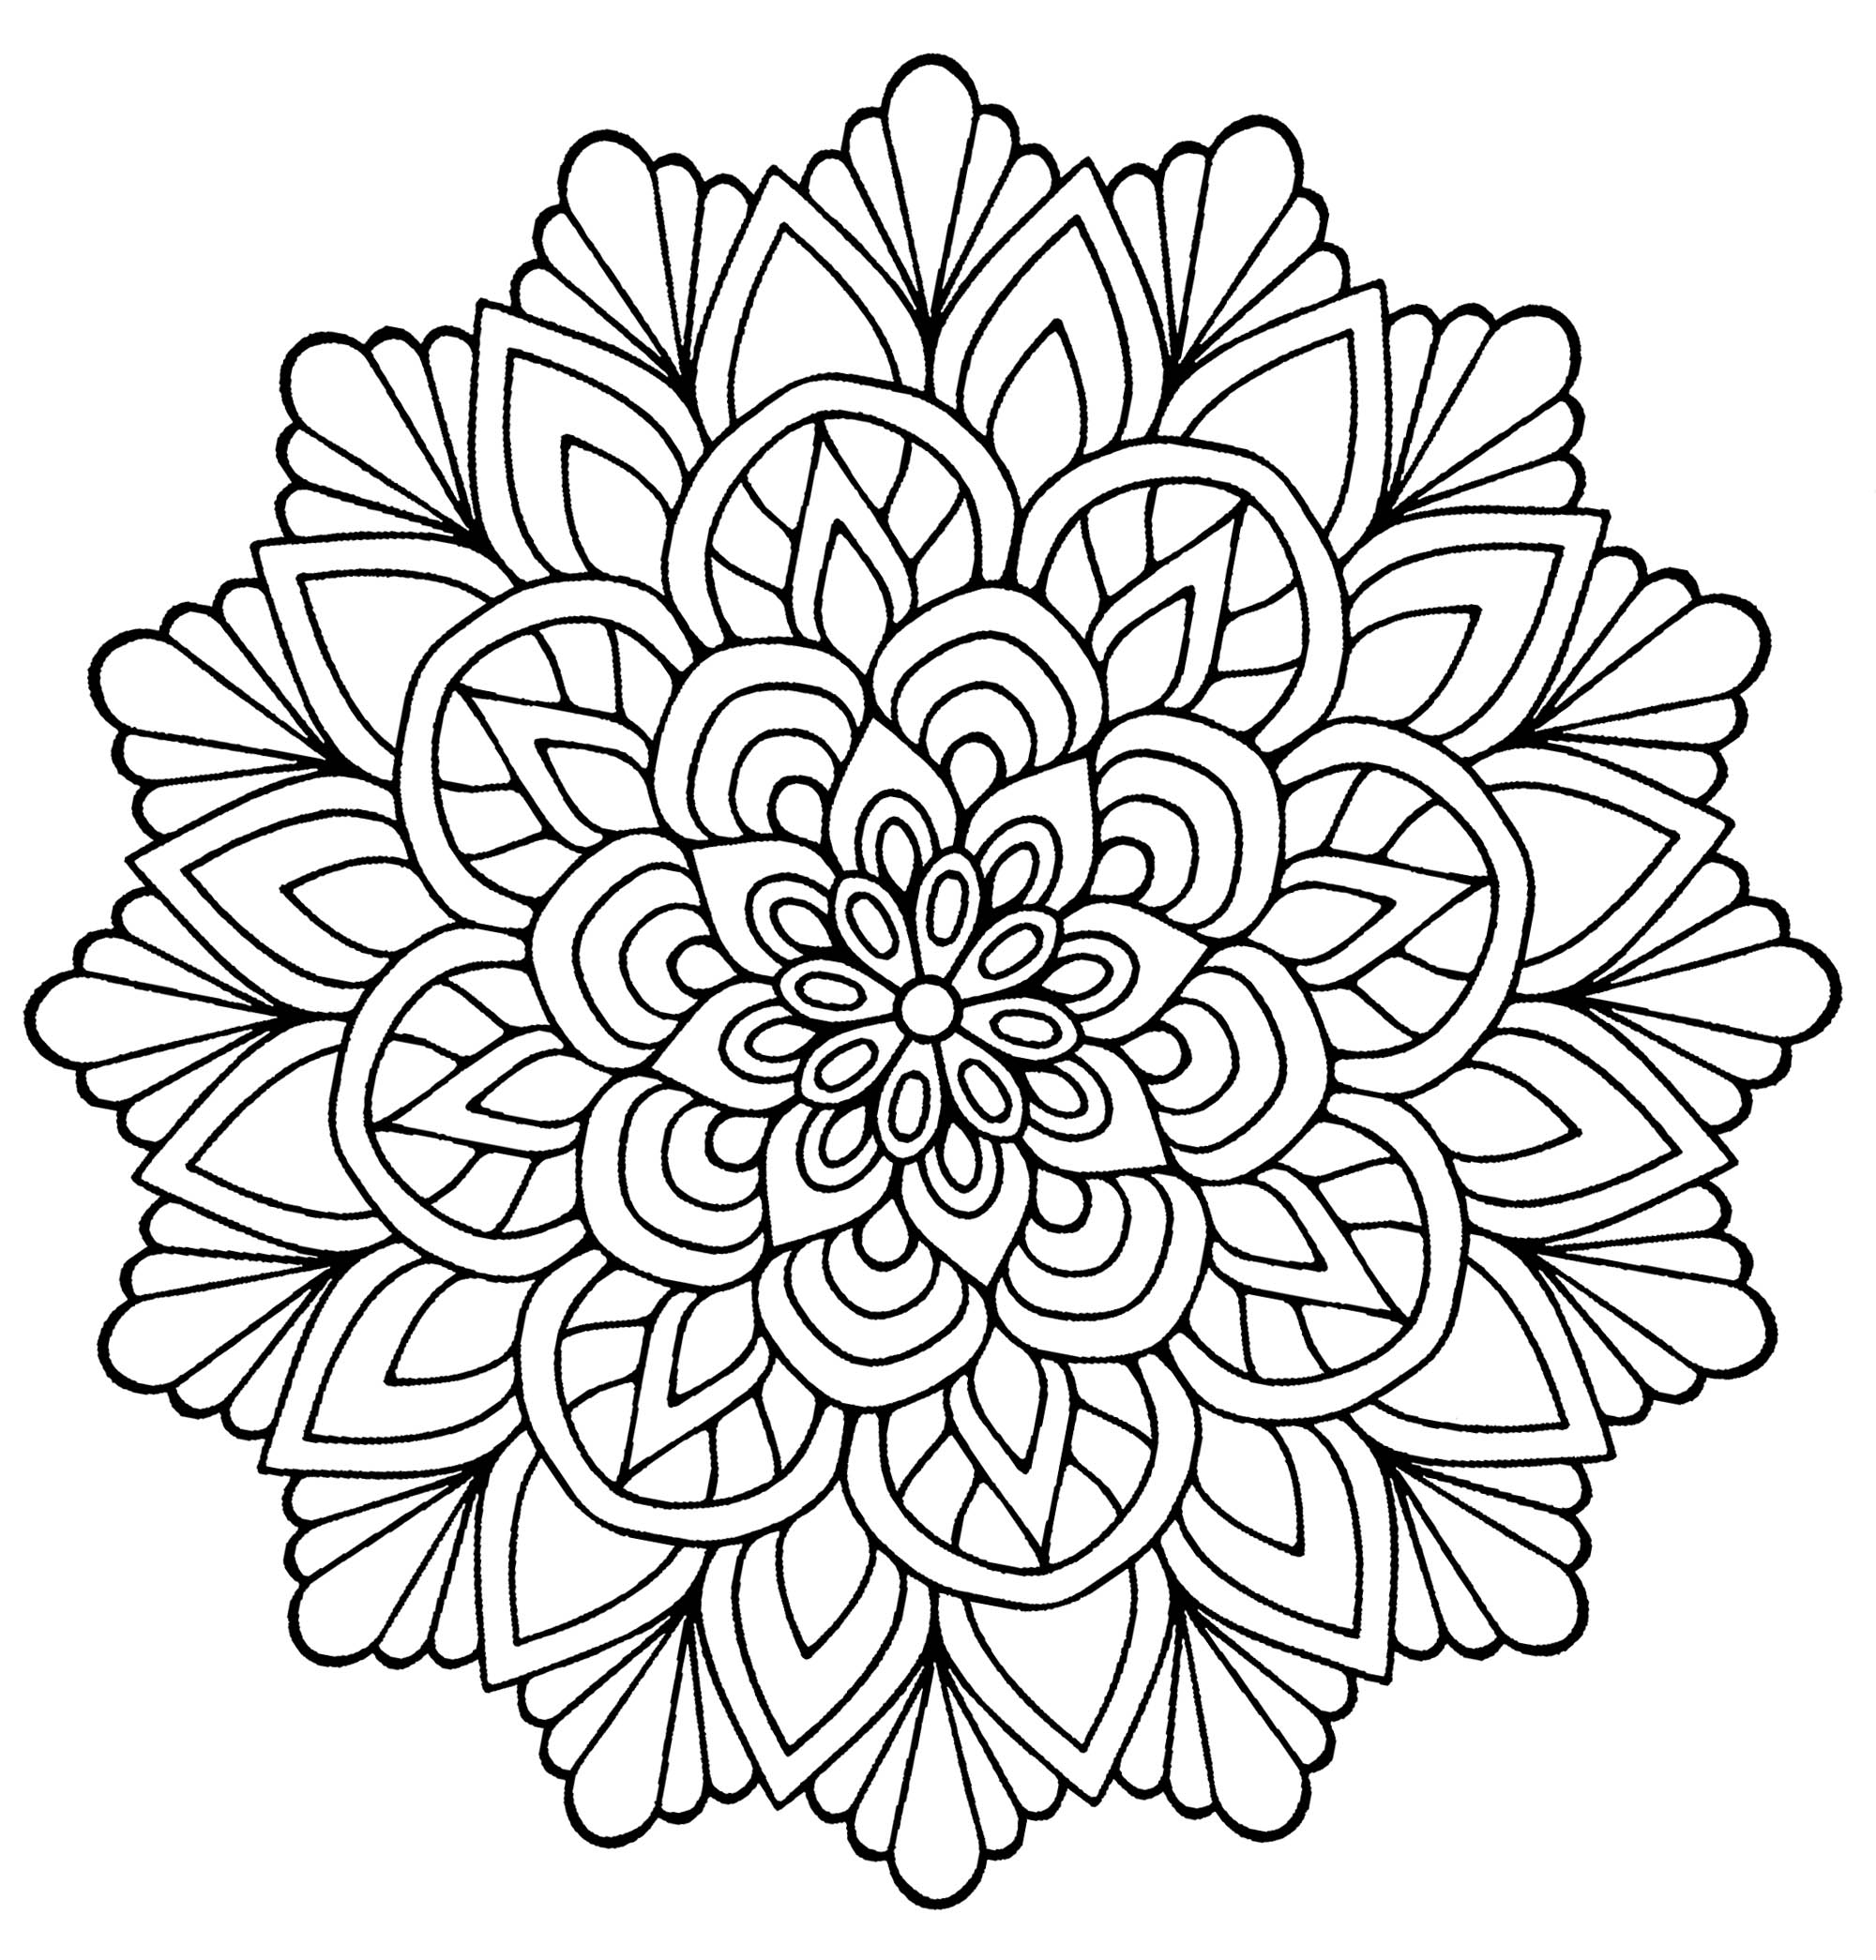 Mandala Fleur Avec Feuilles - Coloriage Mandalas dedans Fleur À Colorier 